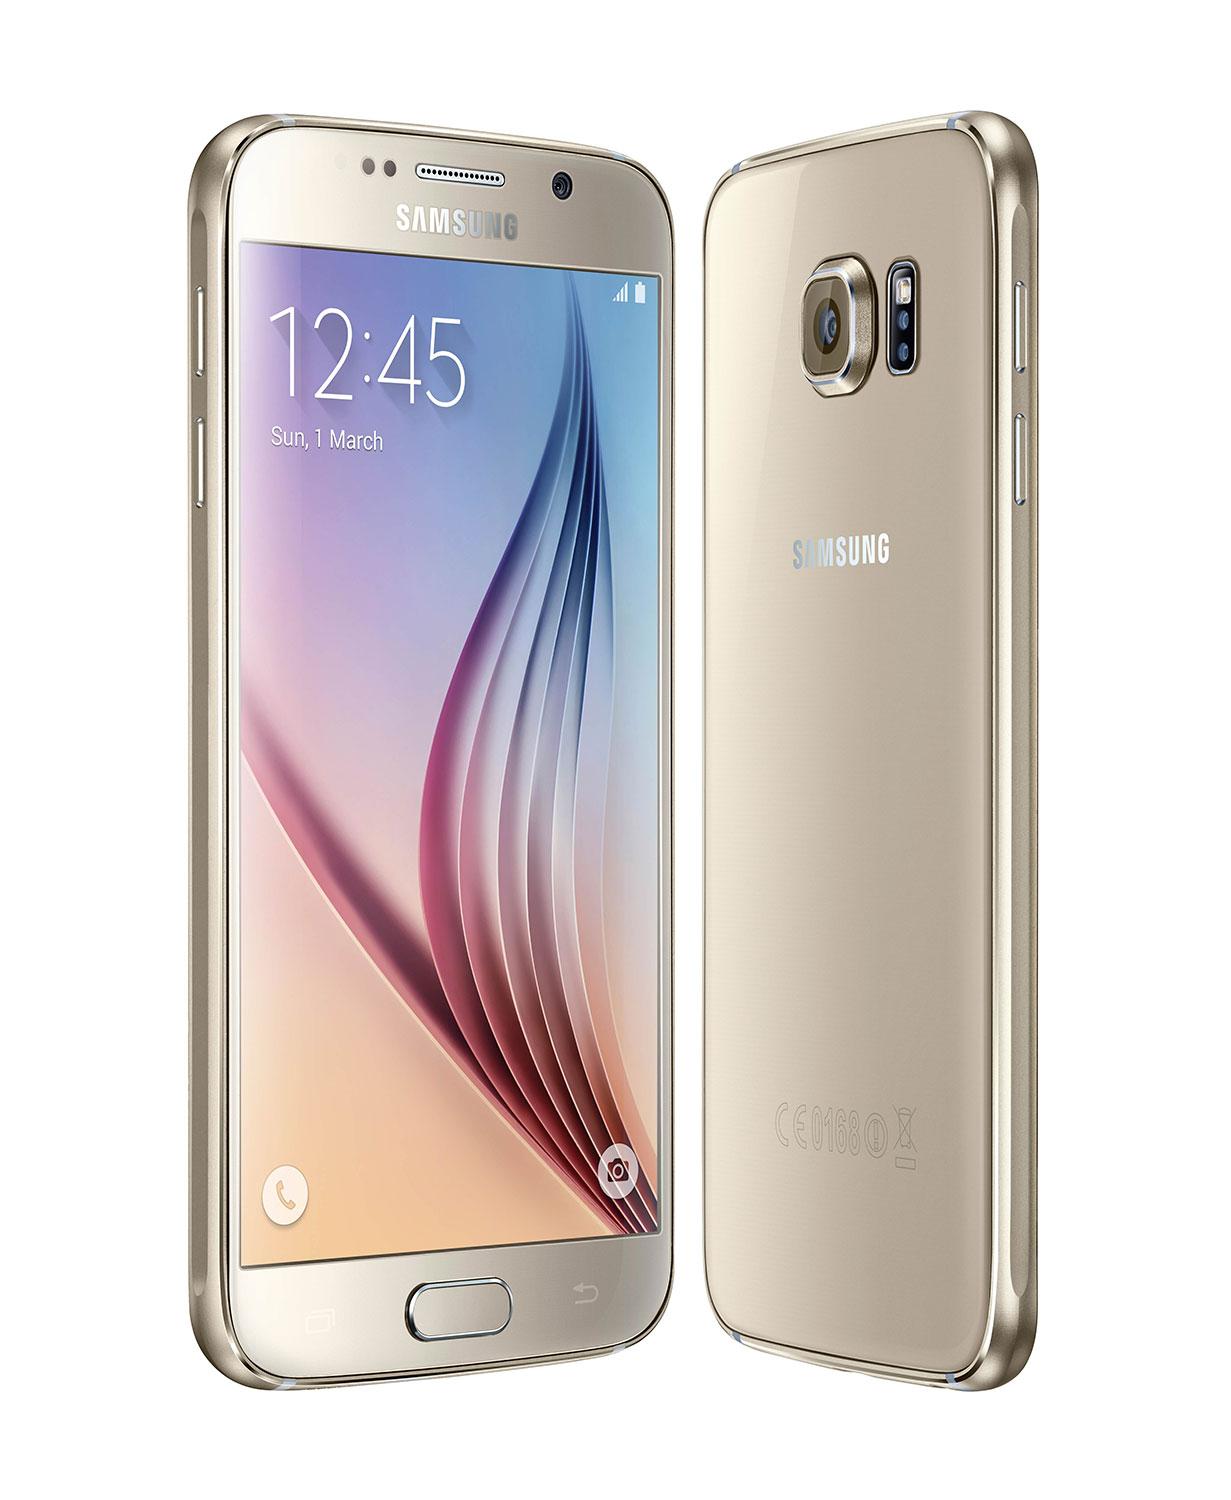 Samsung Galaxy S6 en oro vista frontal y trasera